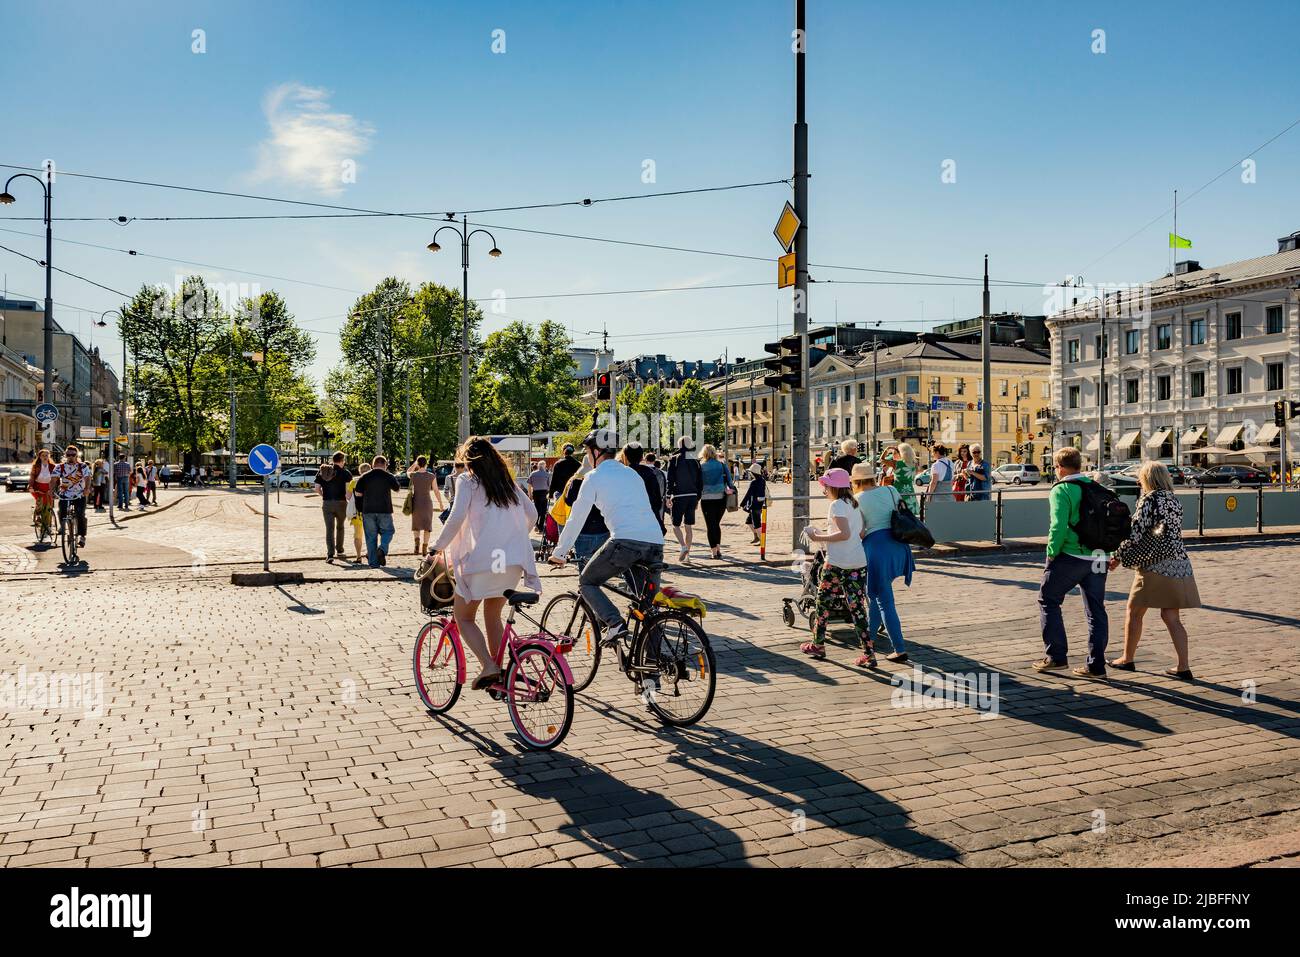 Pedestrians on street in Helsinki, Finland Stock Photo